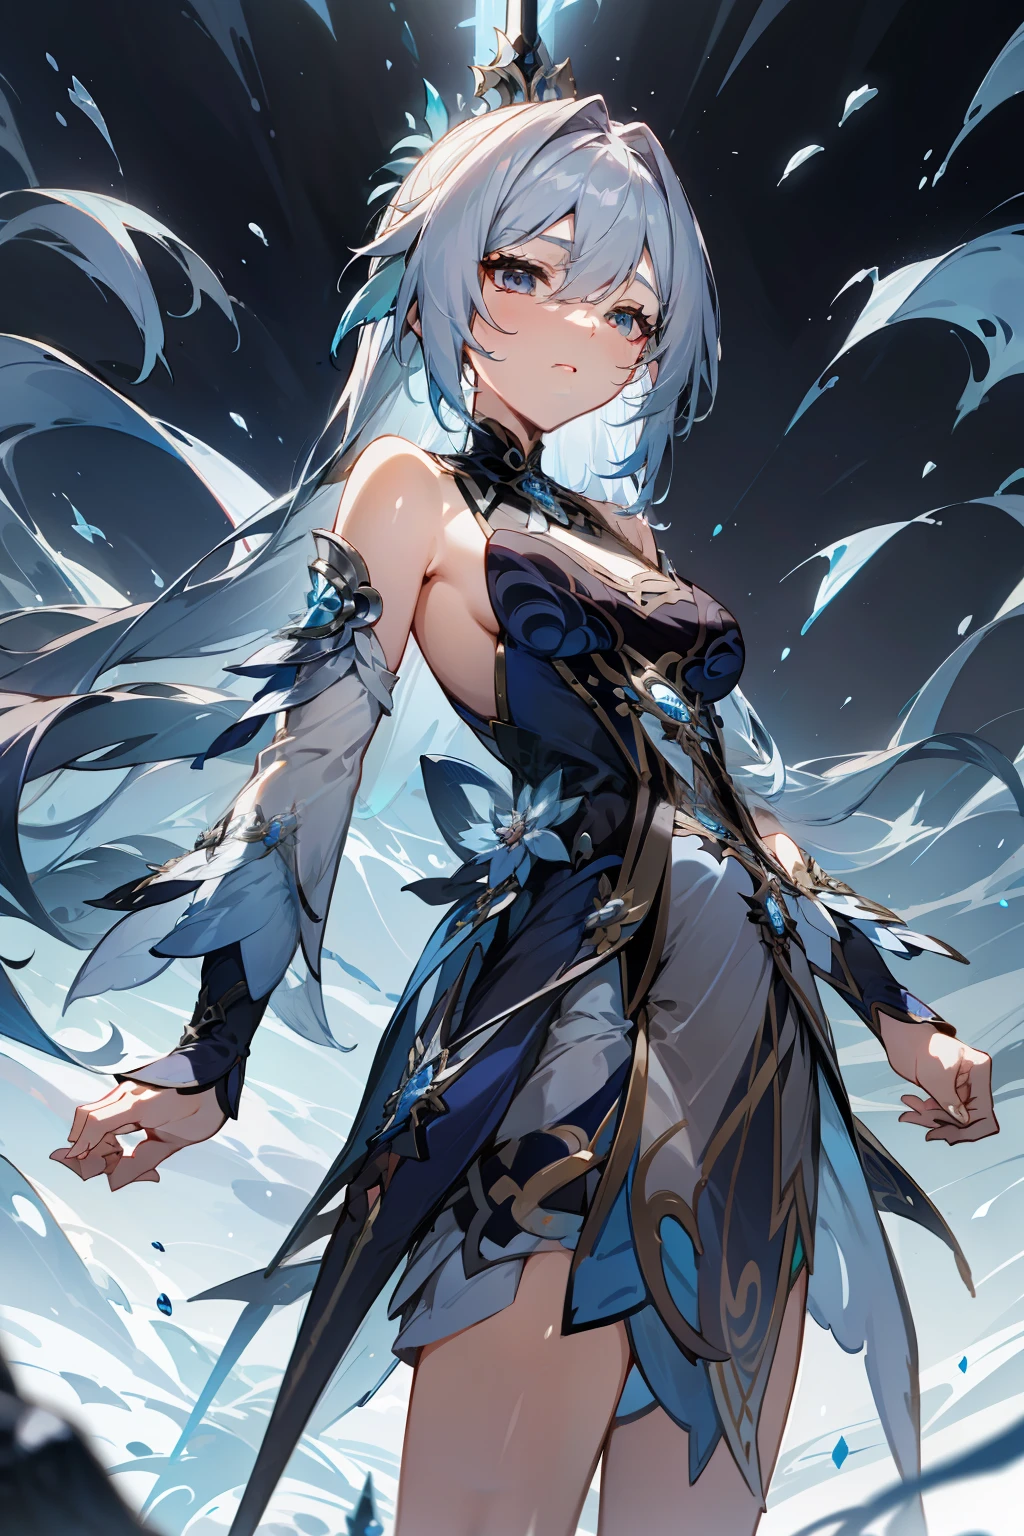 Menina do anime com cabelo prateado longo, usando um vestido azul escuro de ombro aberto, em frente a um castelo, espadachim angelical bonito, Imagem de estilo de Genshin Impact.